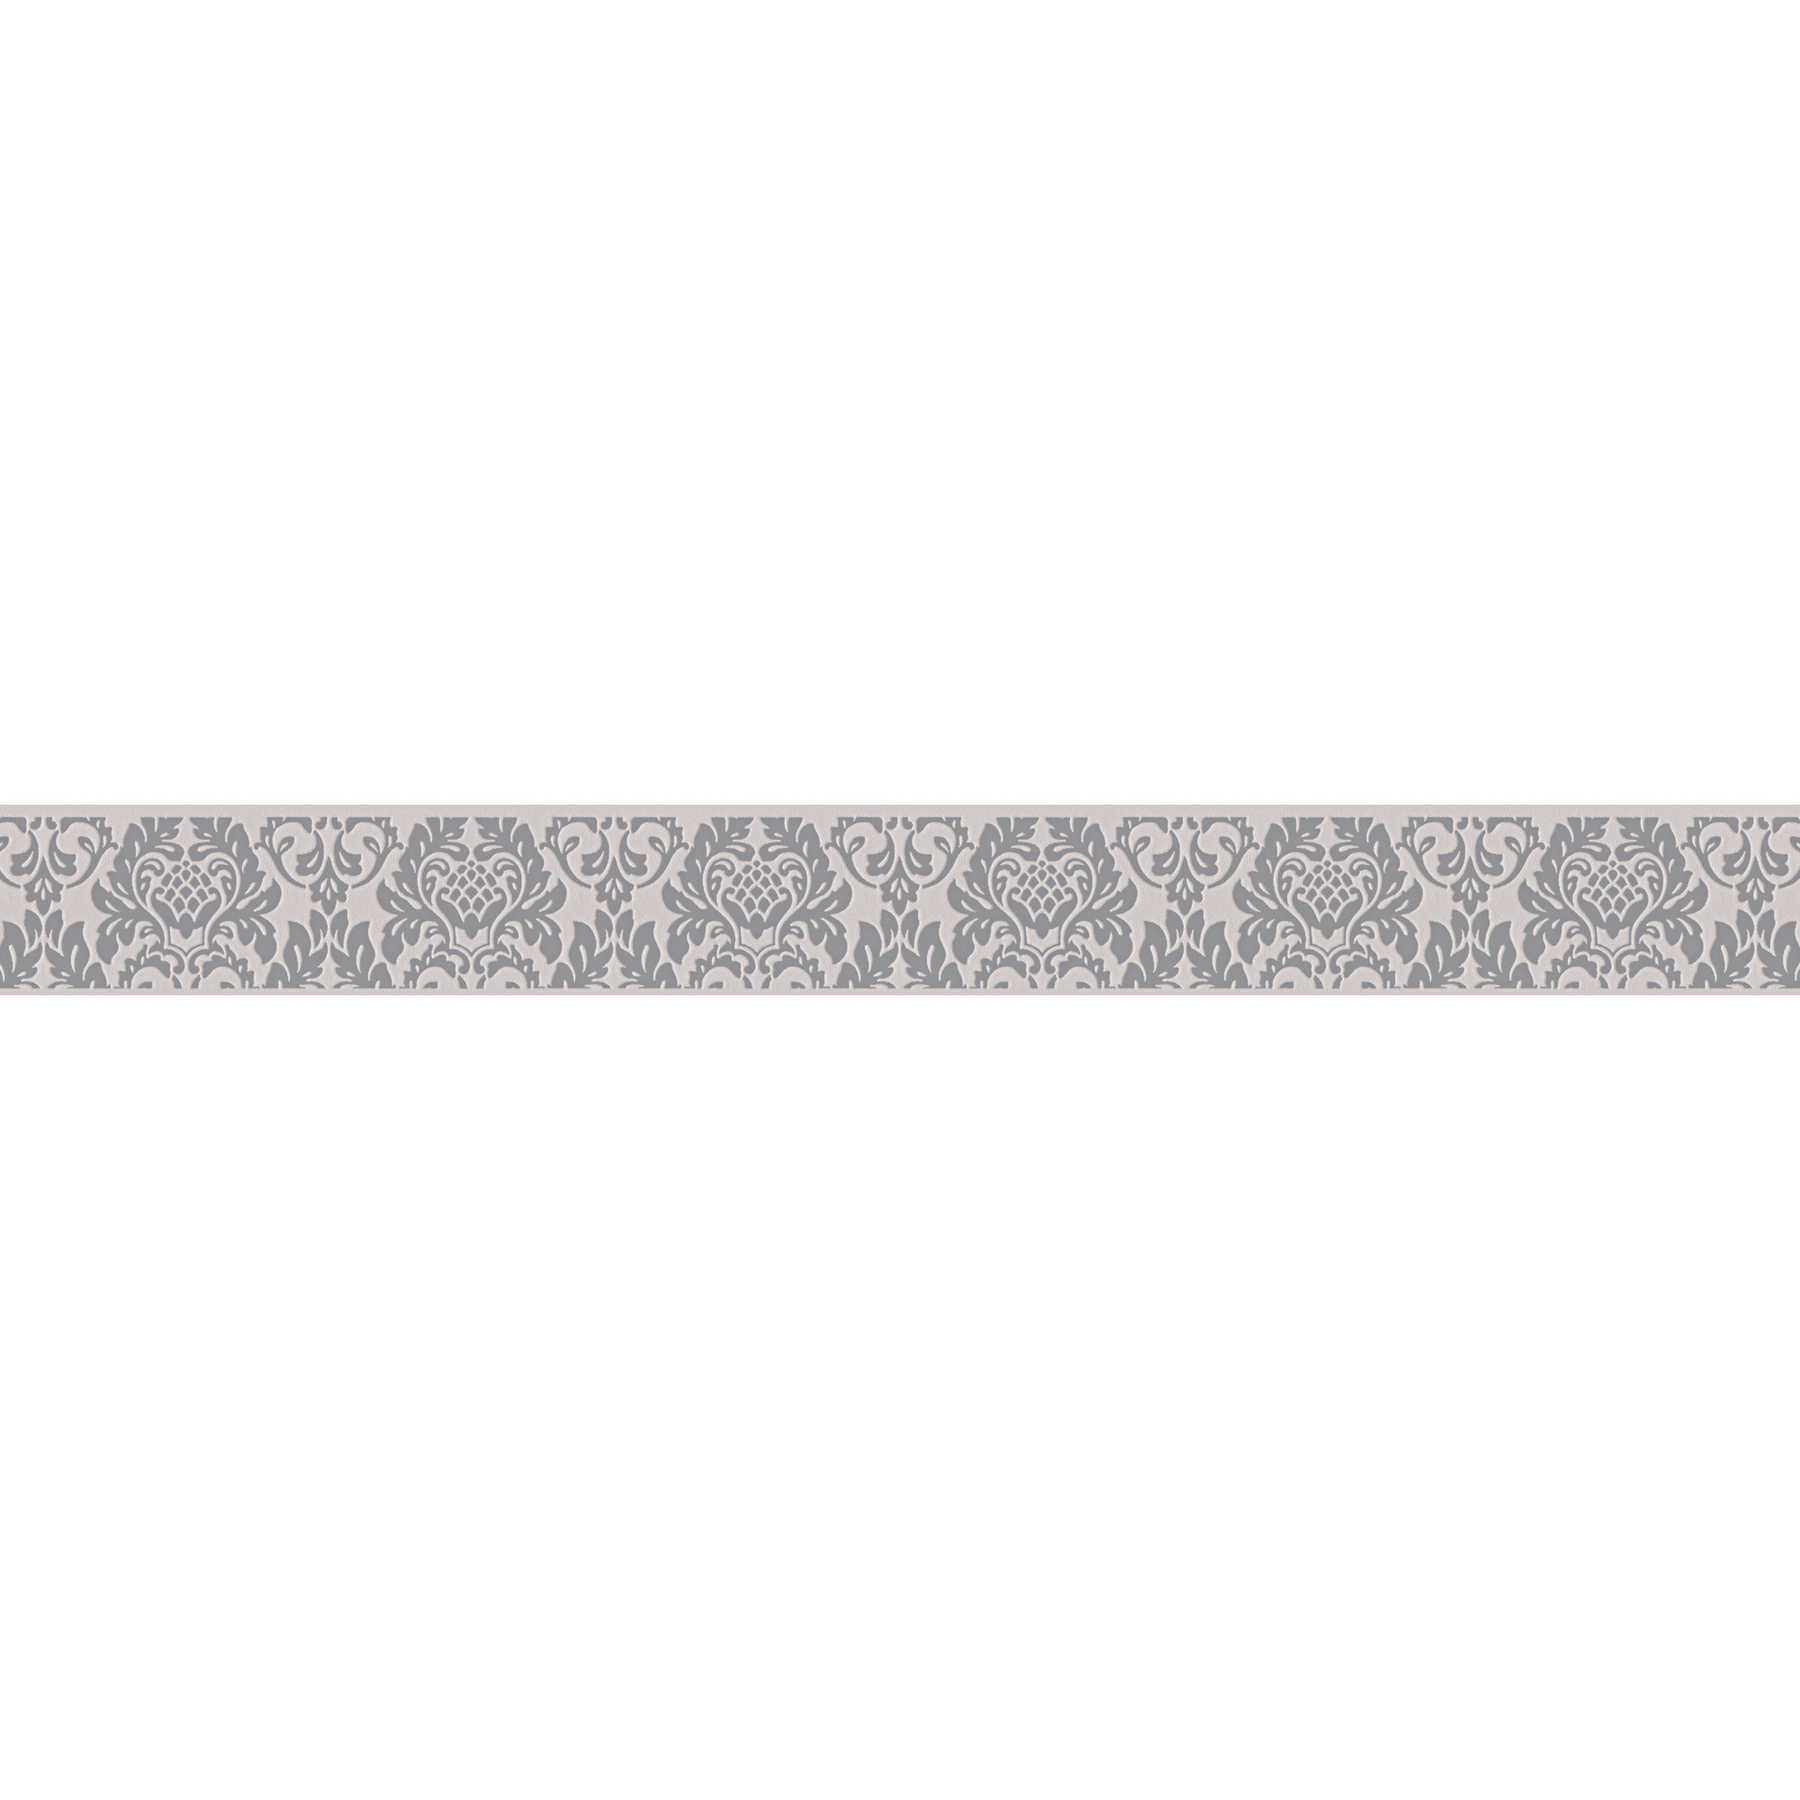 Bordo ornamentale grigio-beige in design giovane
